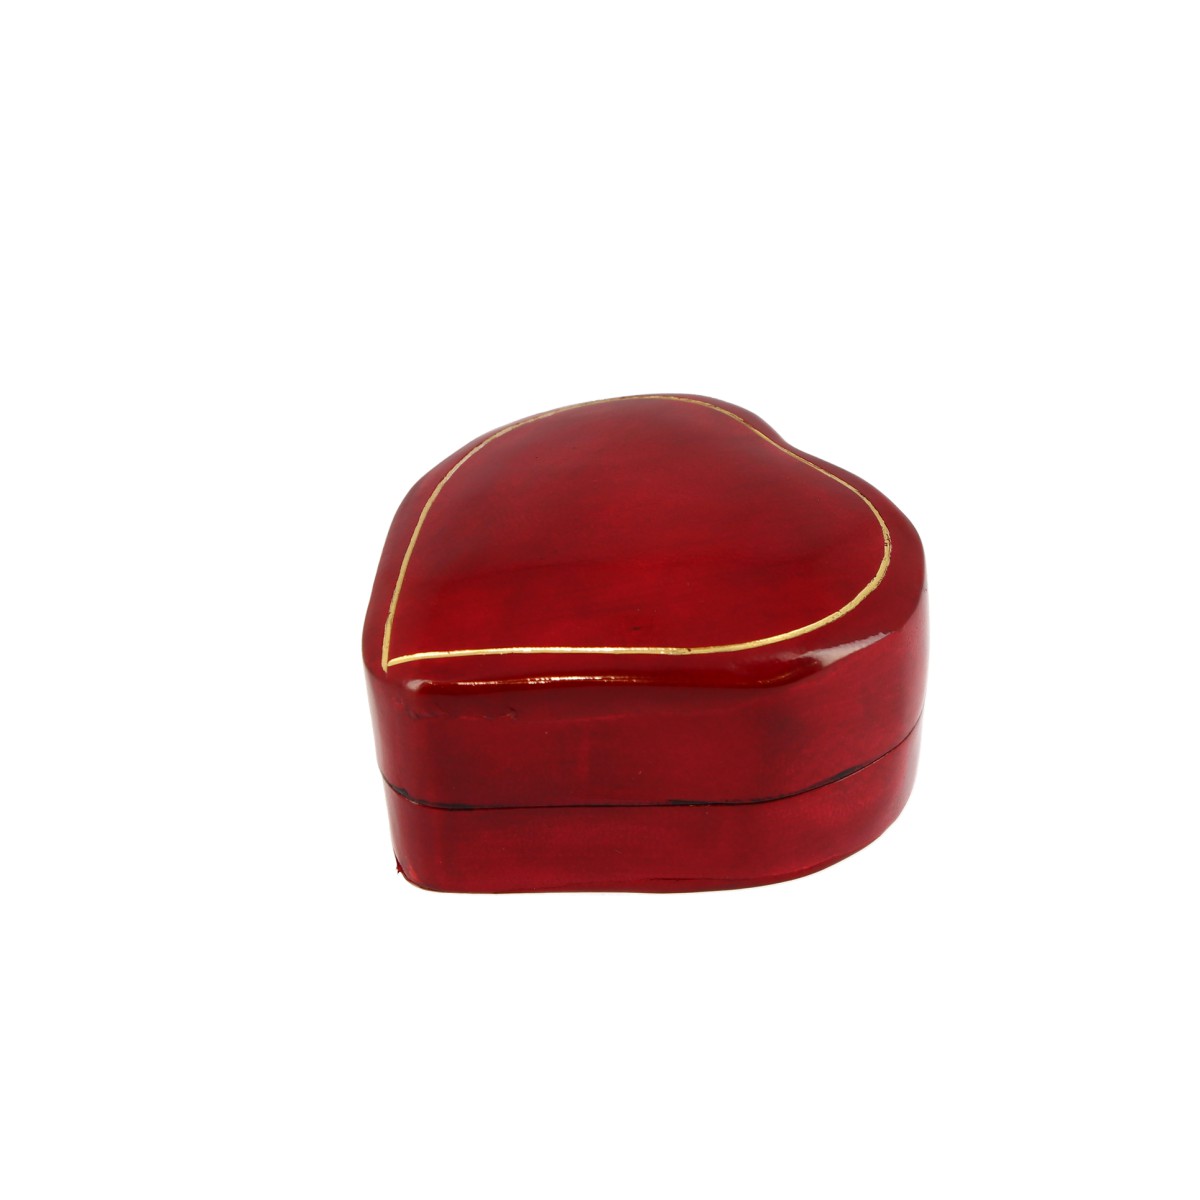 Portagioie bomboniera a forma di cuore realizzata in cuoio rosso per gioielli